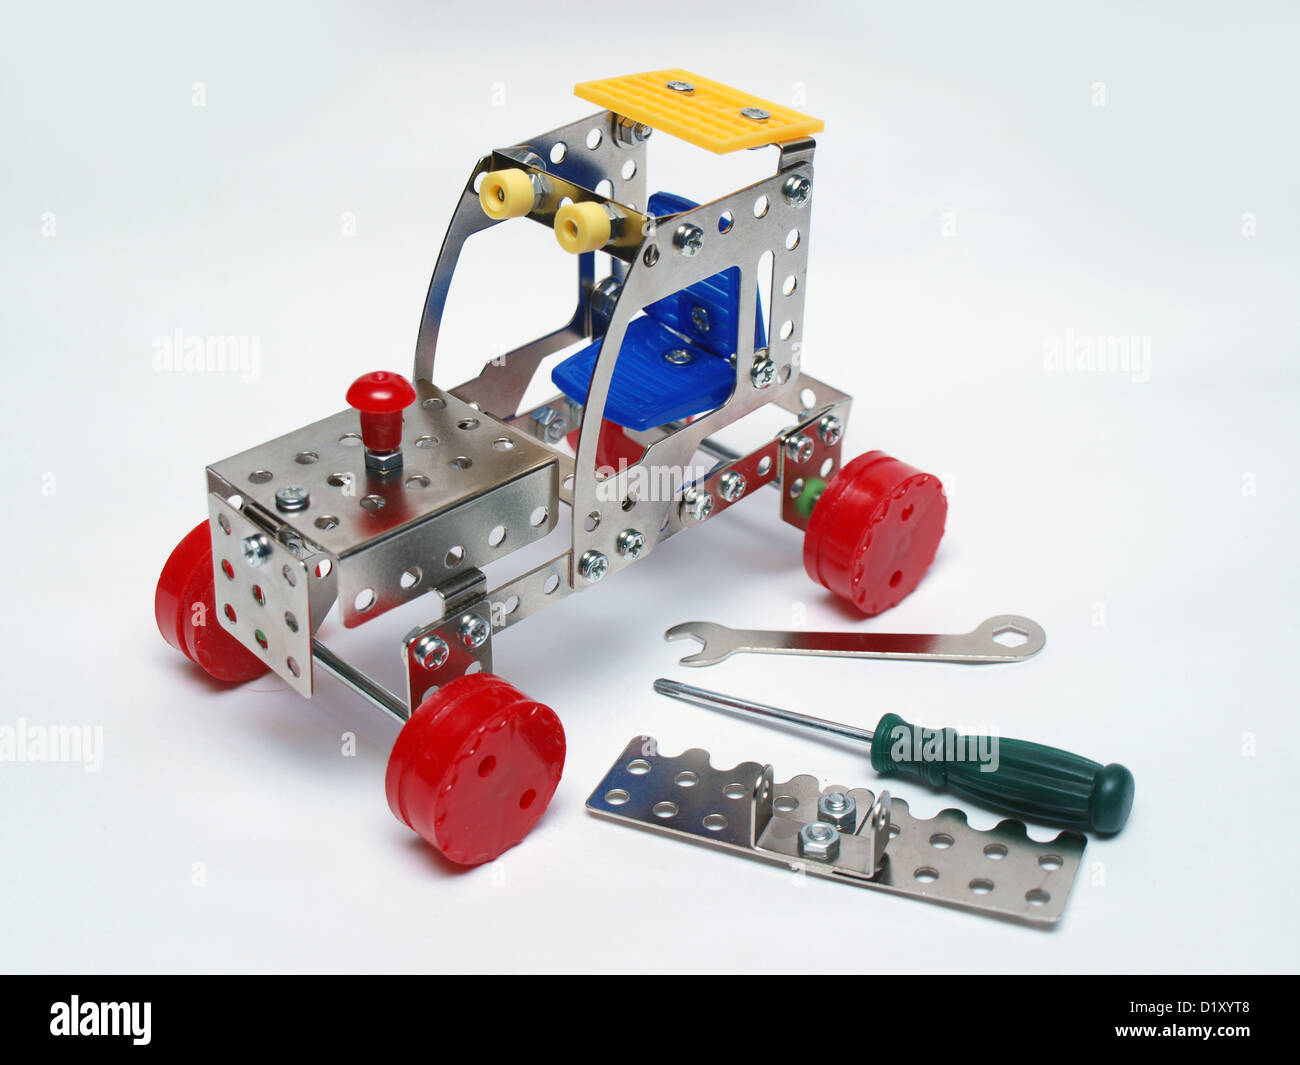 Spielzeug-Traktor aus Metall Konstruktor Details, Schraubenschlüssel und Schraubendreher gemacht Stockfoto